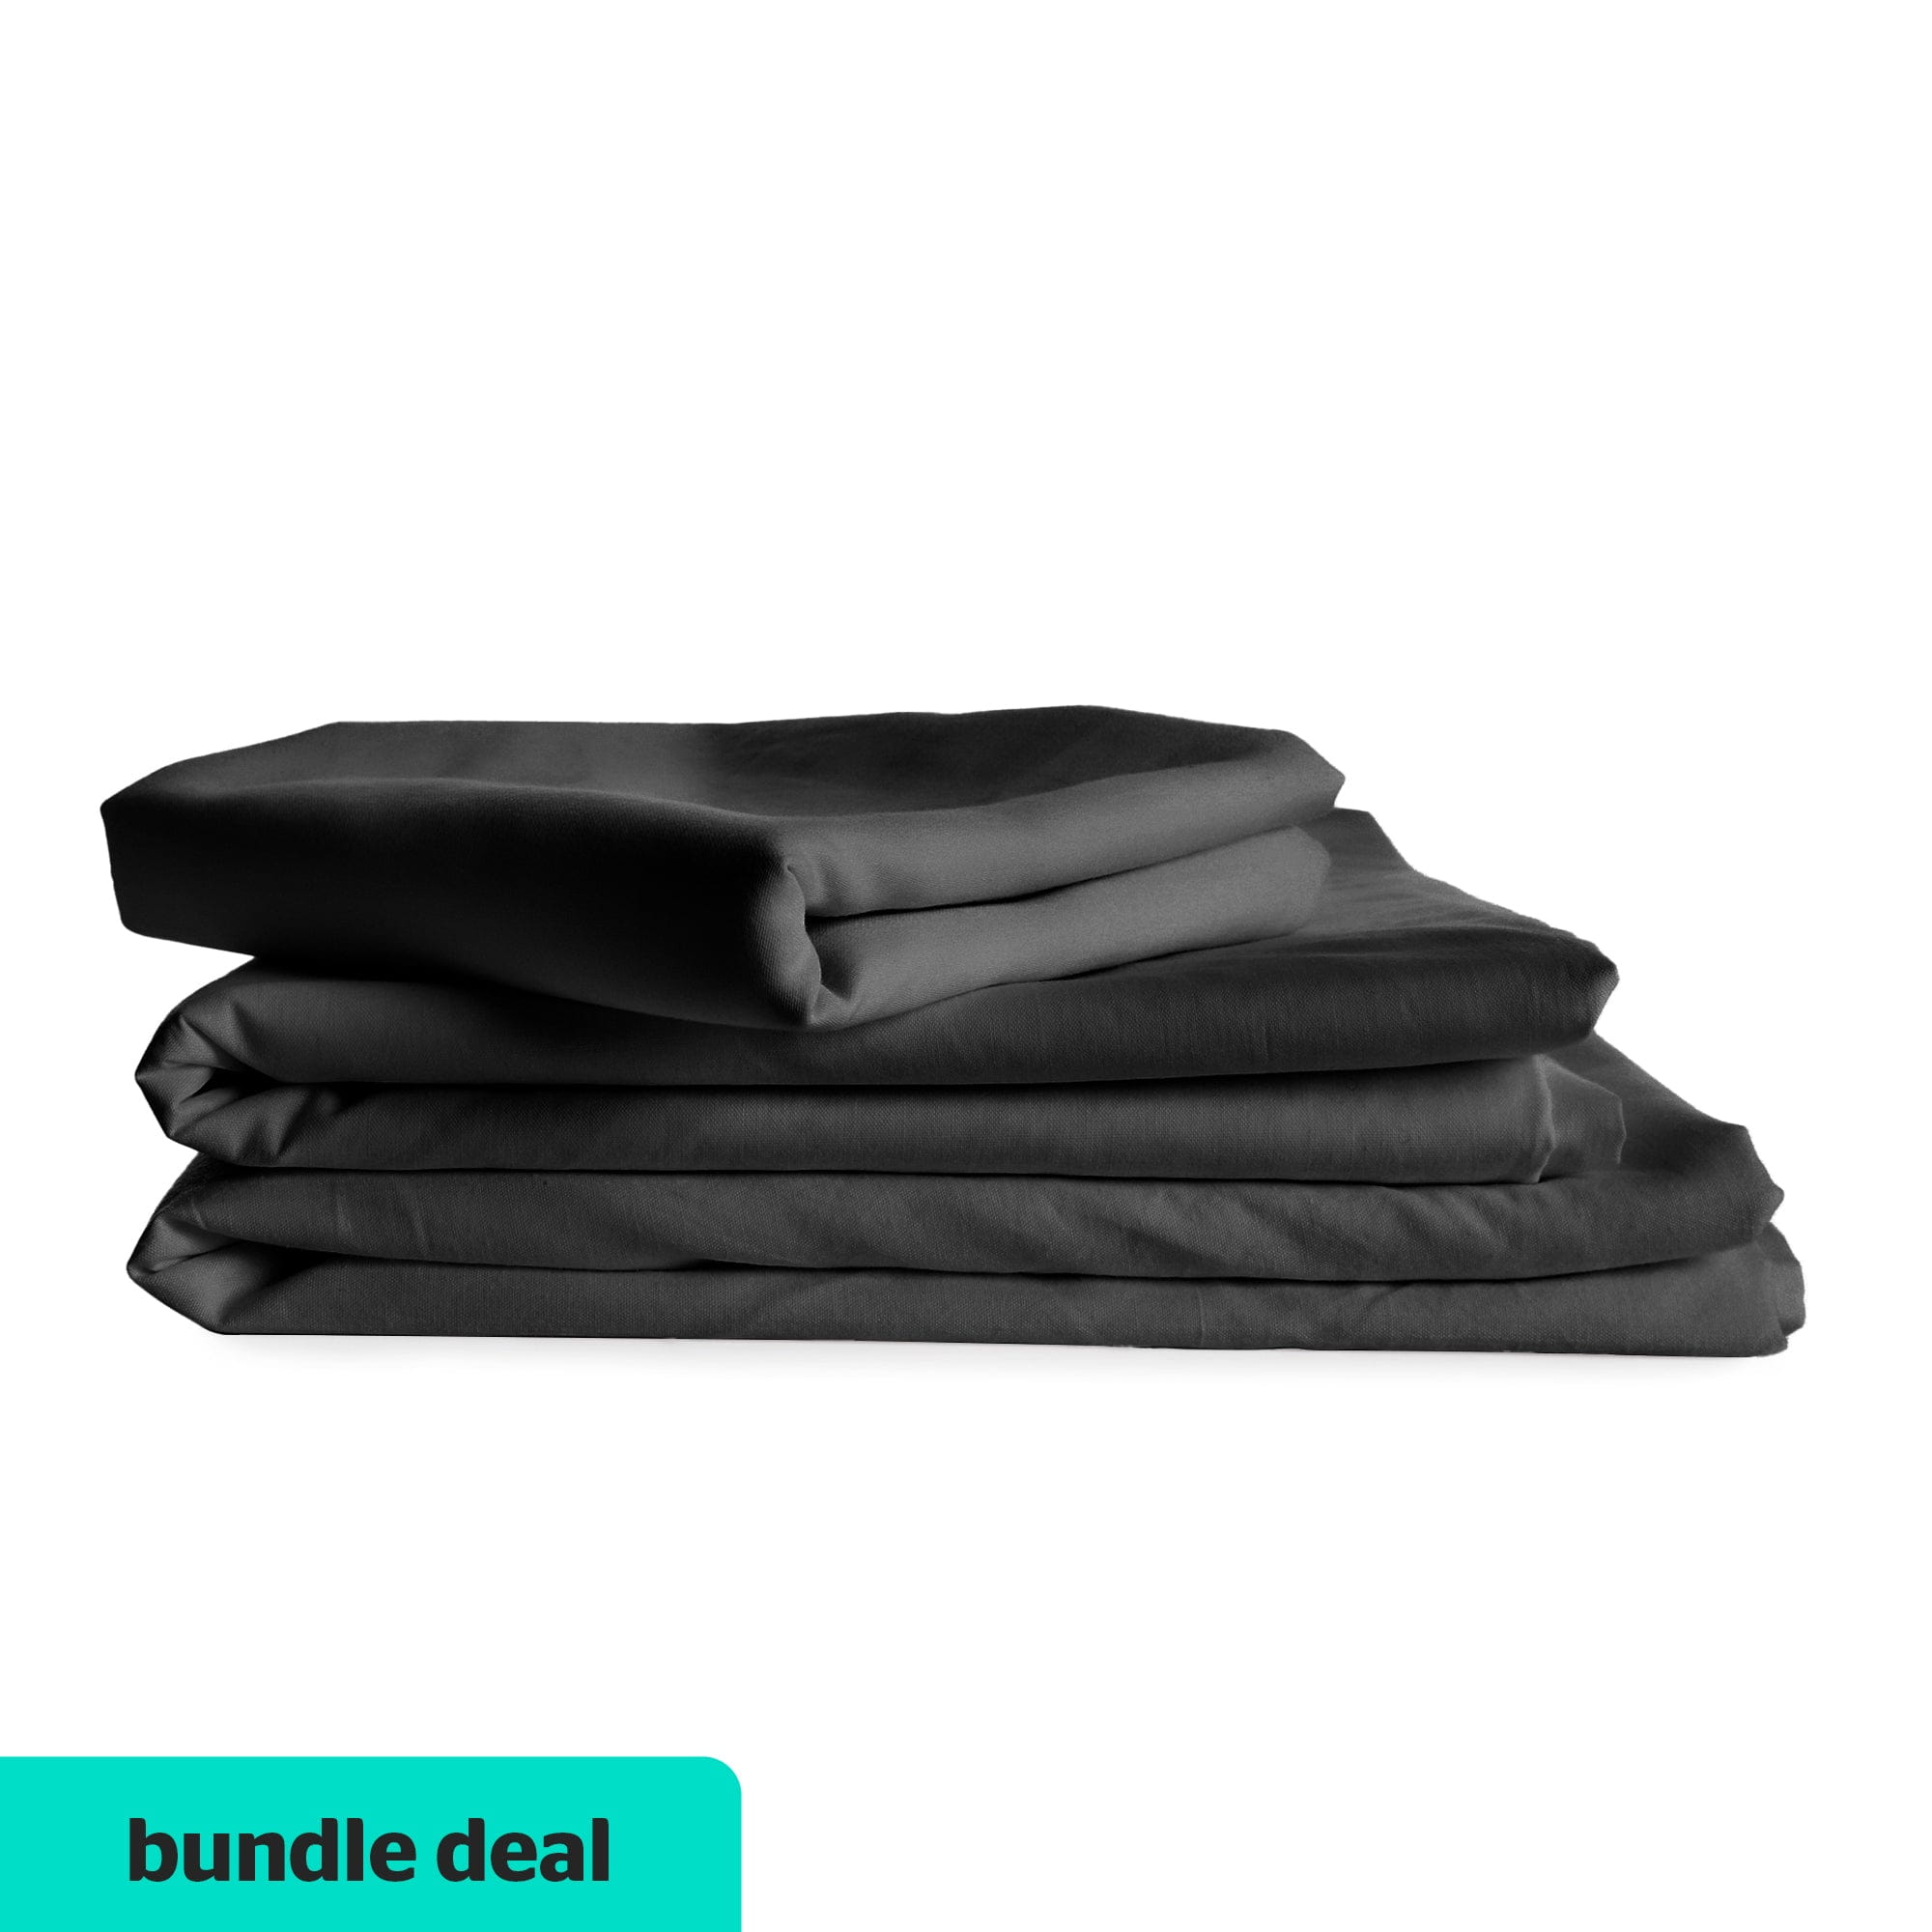 Essential Flat Sheet + Standard Pillow Case Value Set